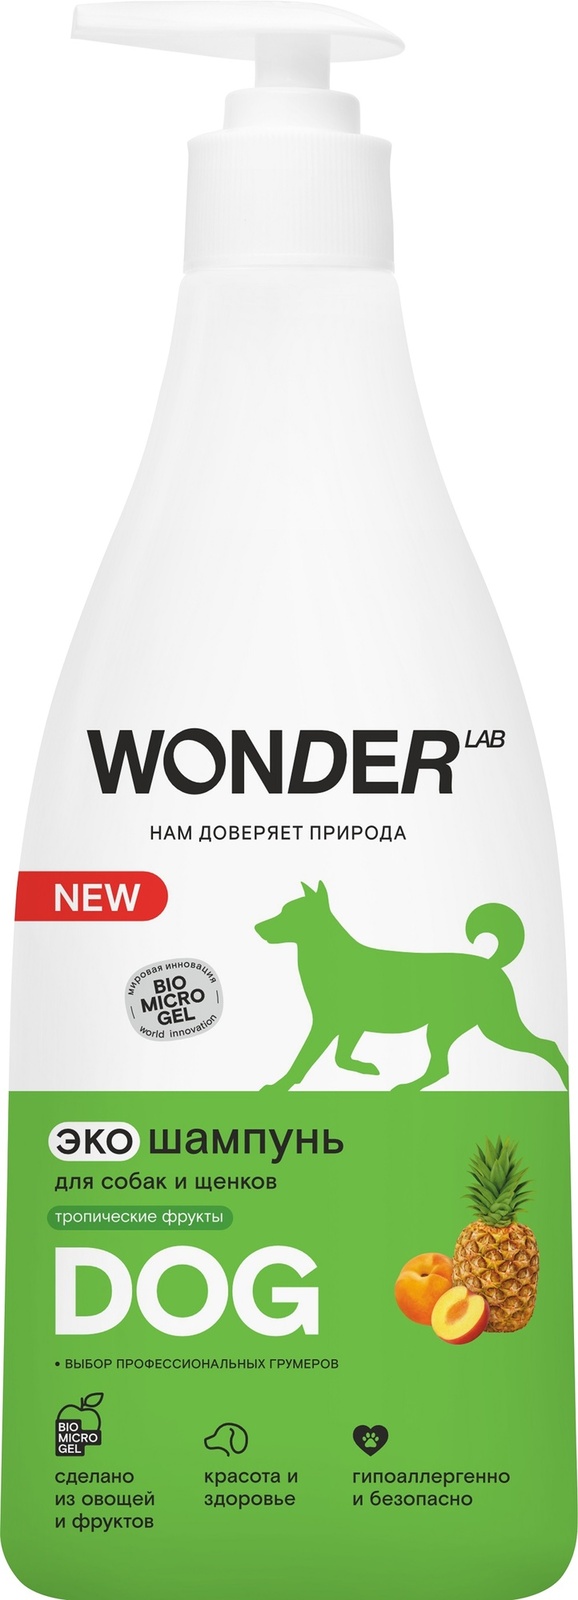 Wonder lab Wonder lab шампунь для собак экологичный, с ароматом тропических фруктов (550 г)